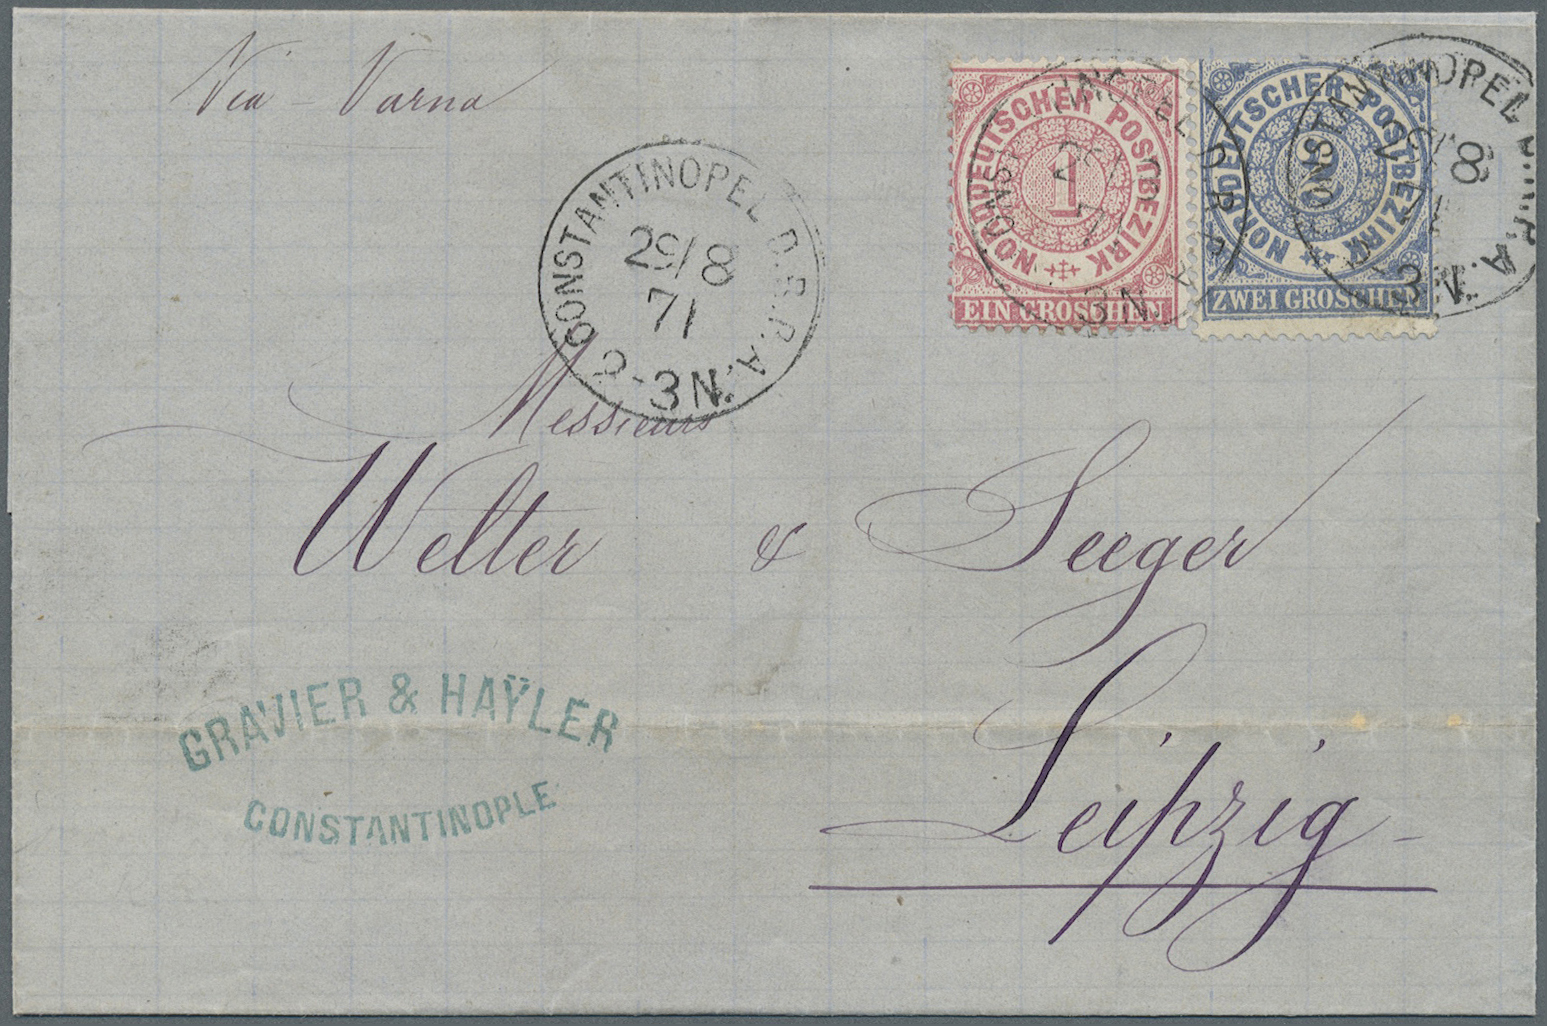 Br Deutsche Post In Der Türkei - Vorläufer: 1871, Norddeutsche Postagentur, 1 Und 2 Groschen Ziffernzei - Turquie (bureaux)